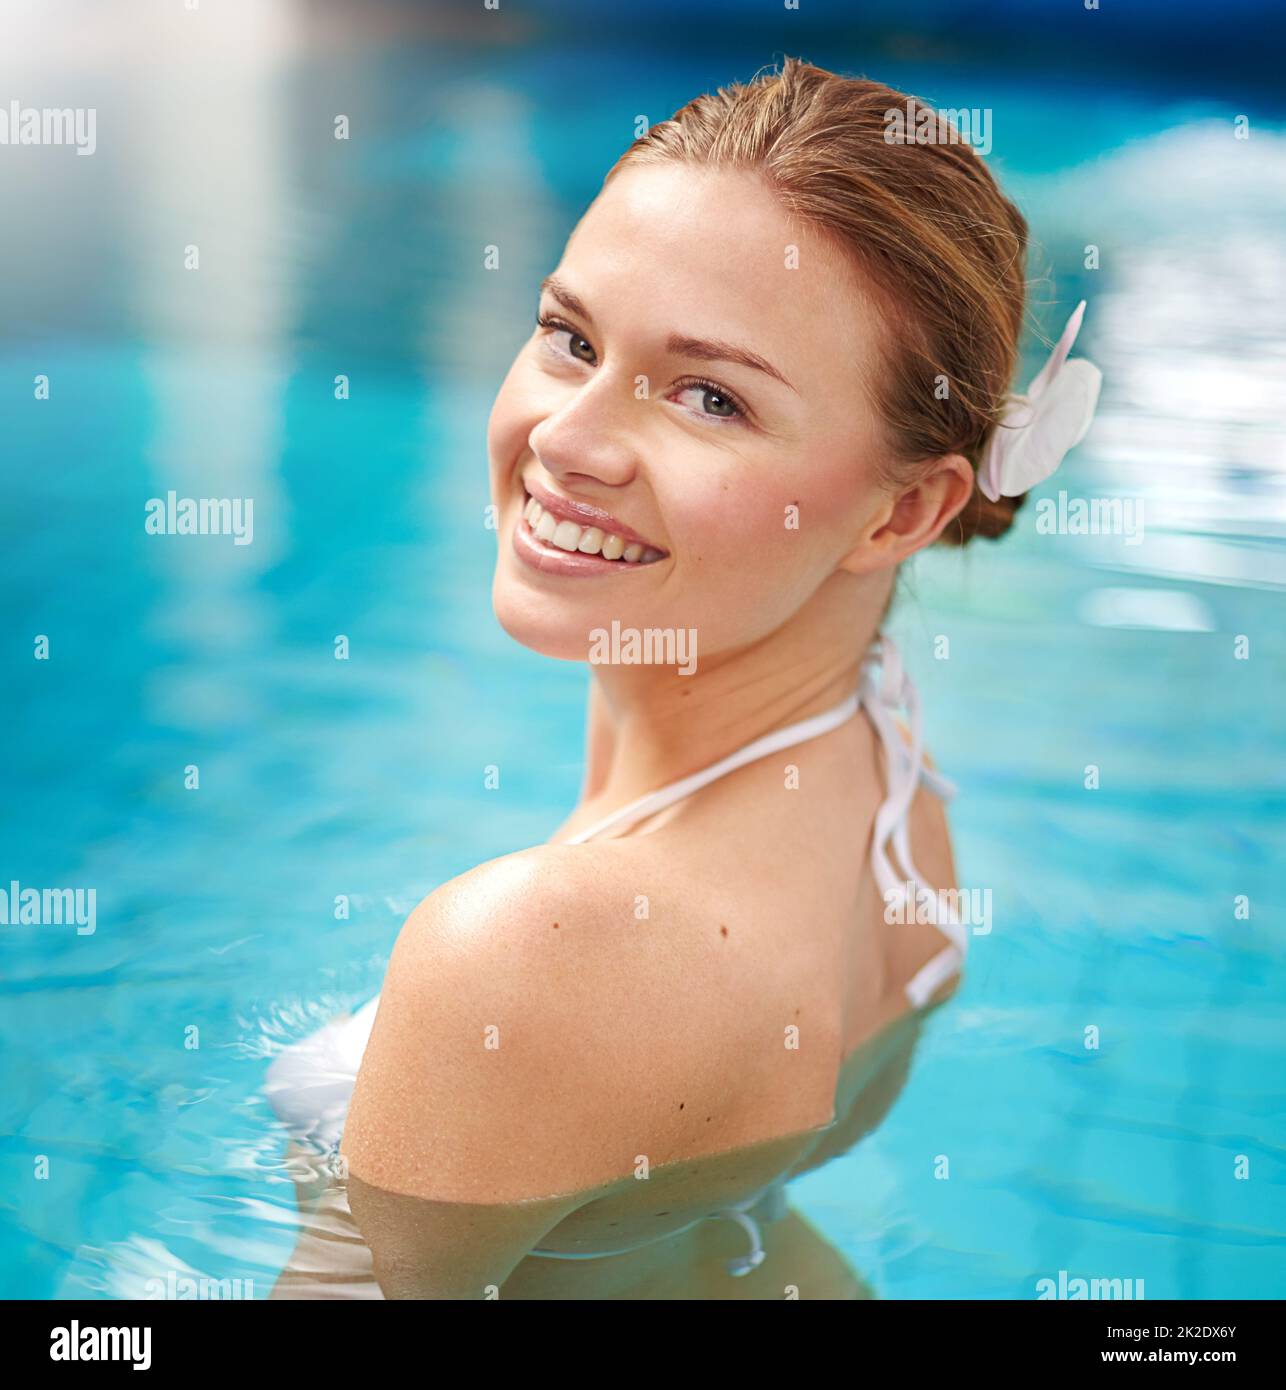 Godendo dei piaceri semplici di una nuotata rilassante. Shot di una giovane donna che si rilassa in piscina presso un centro benessere. Foto Stock